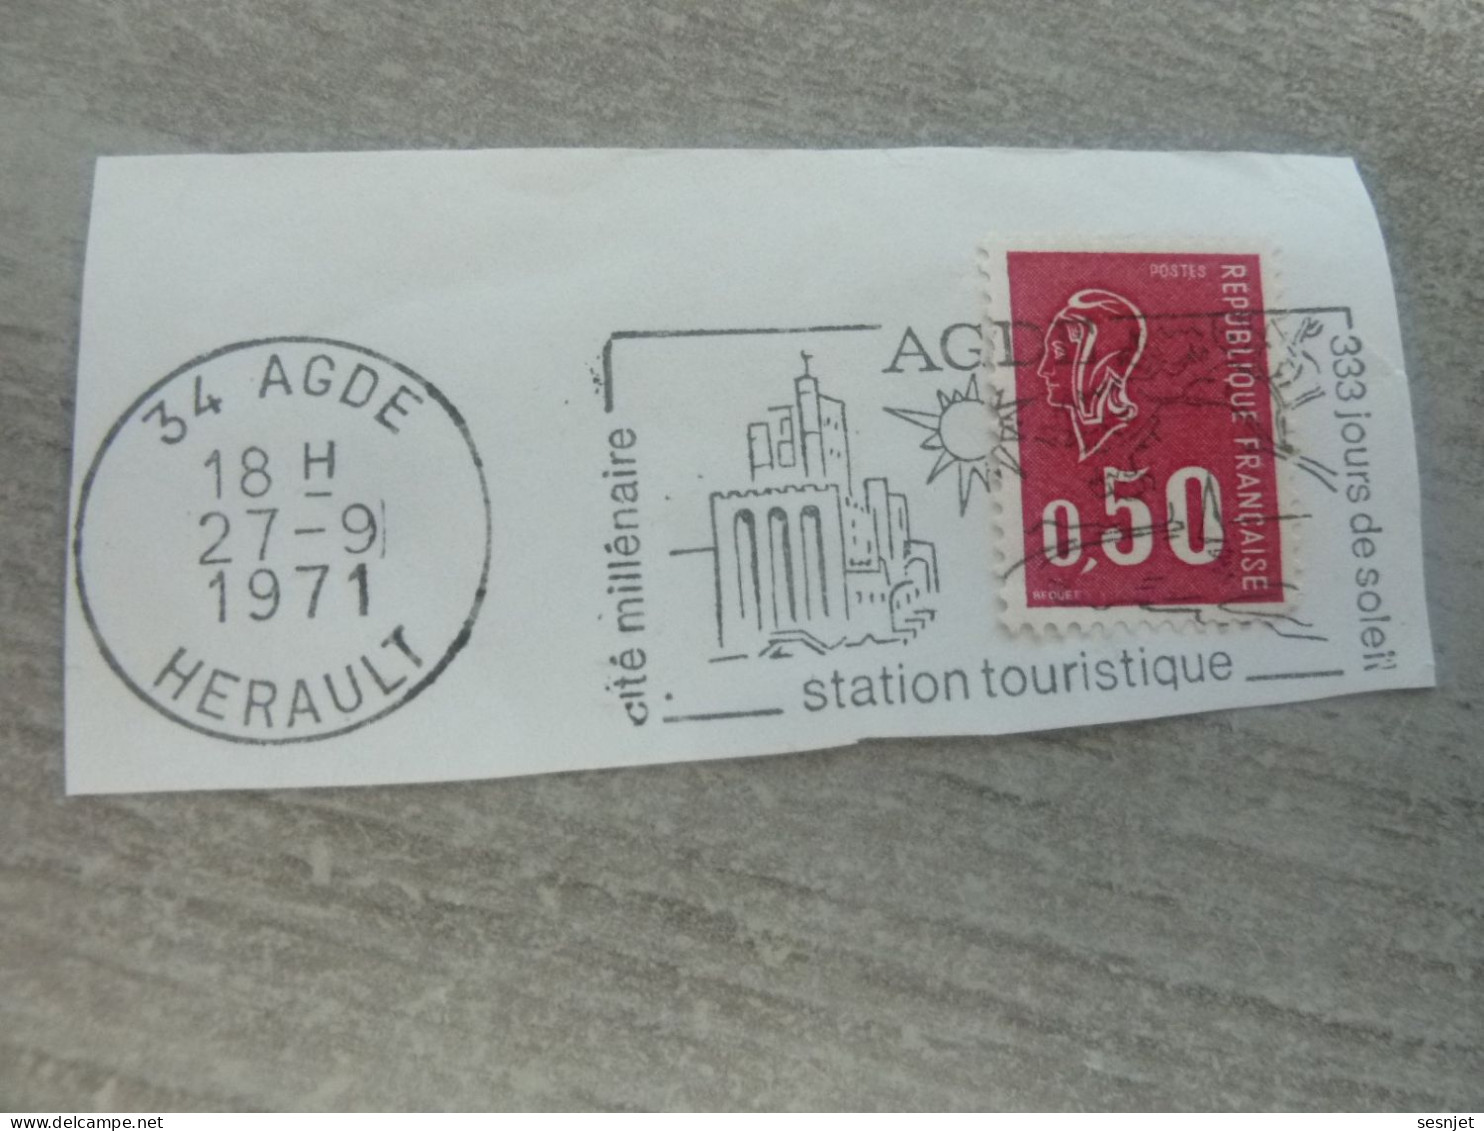 Agde - Hérault - Cité Millénaire - 333 Jours De Soleil - Yt 1664 - Flamme Philatélique - Année 1971 - - Used Stamps